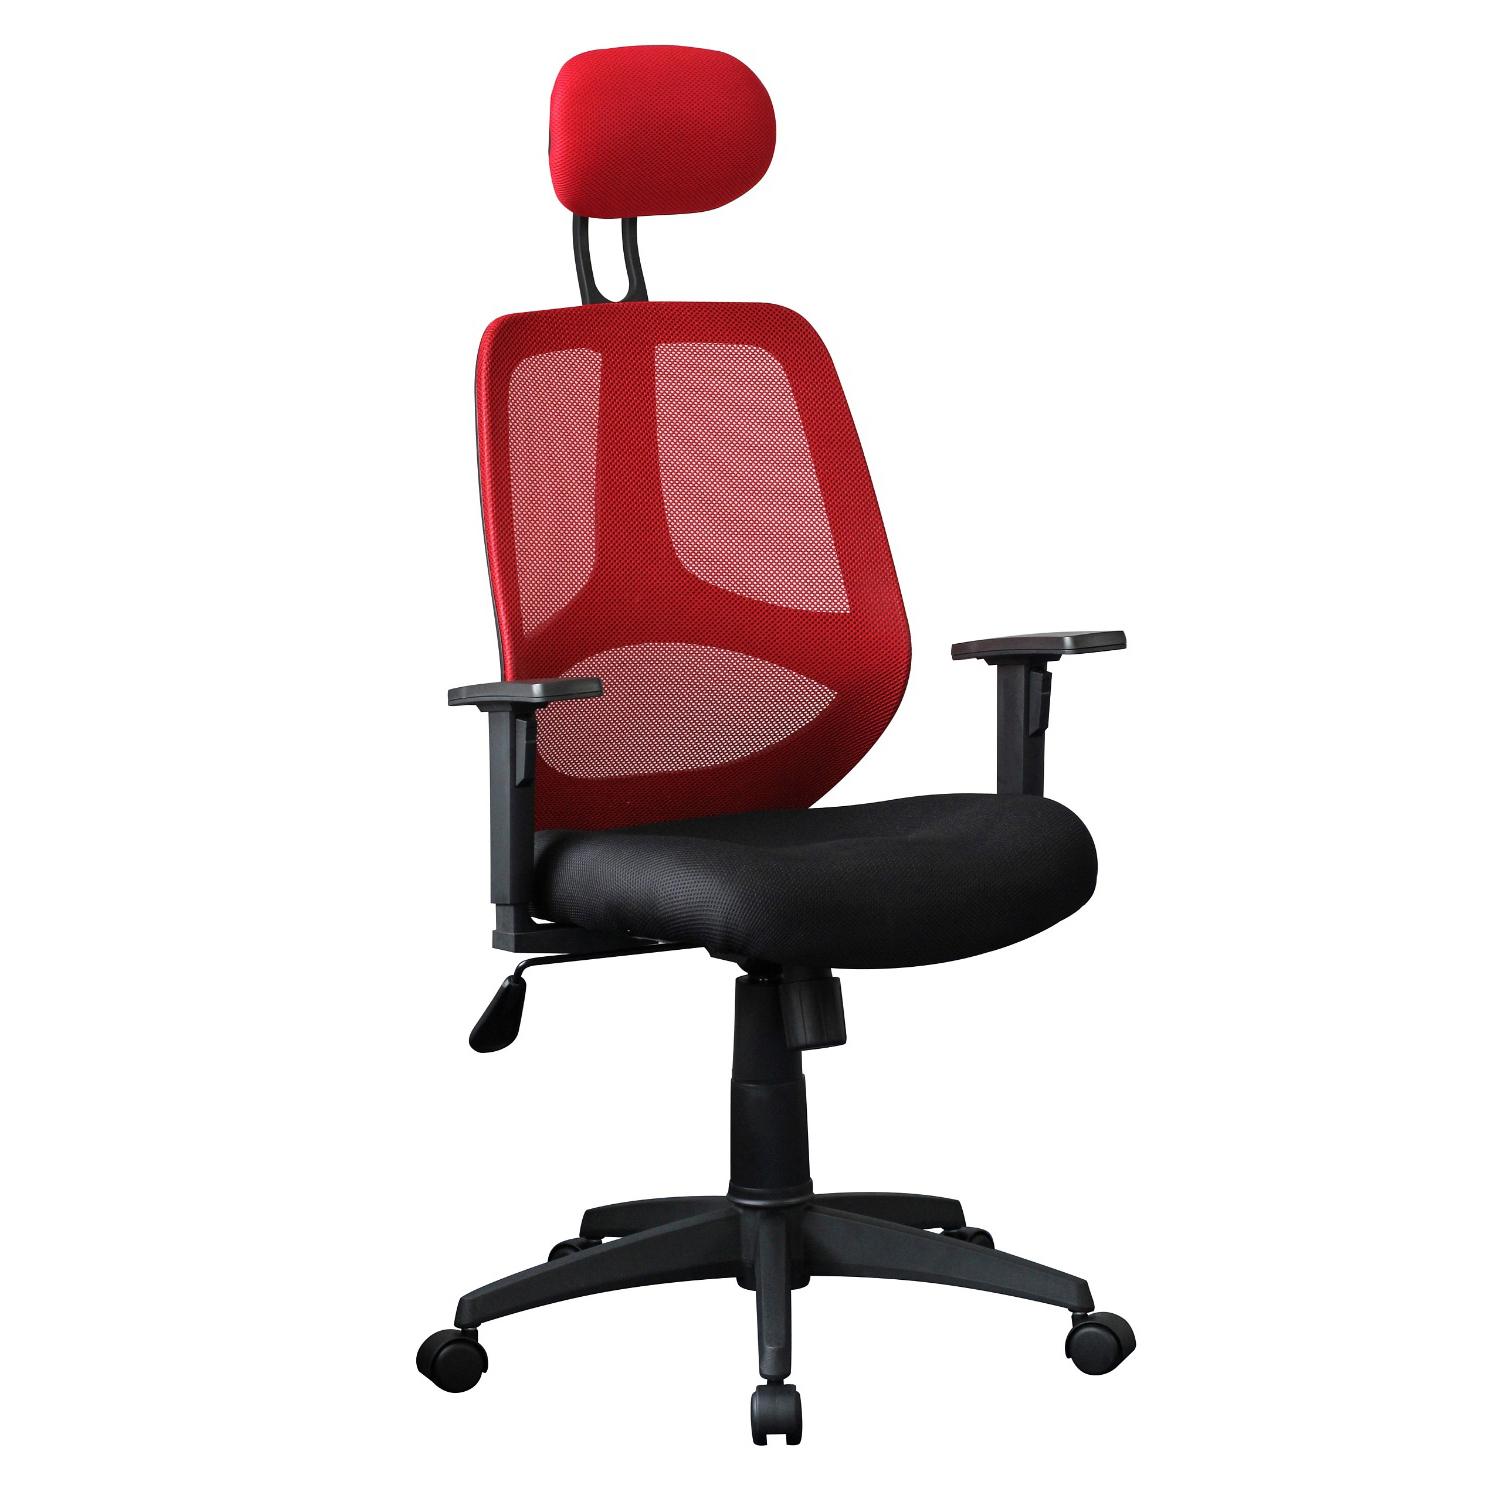 Cadeira Ergonómica DRAKE, Com Apoia Cabeças e braços Reguláveis, em Malha respirável, Em Vermelho / Preto